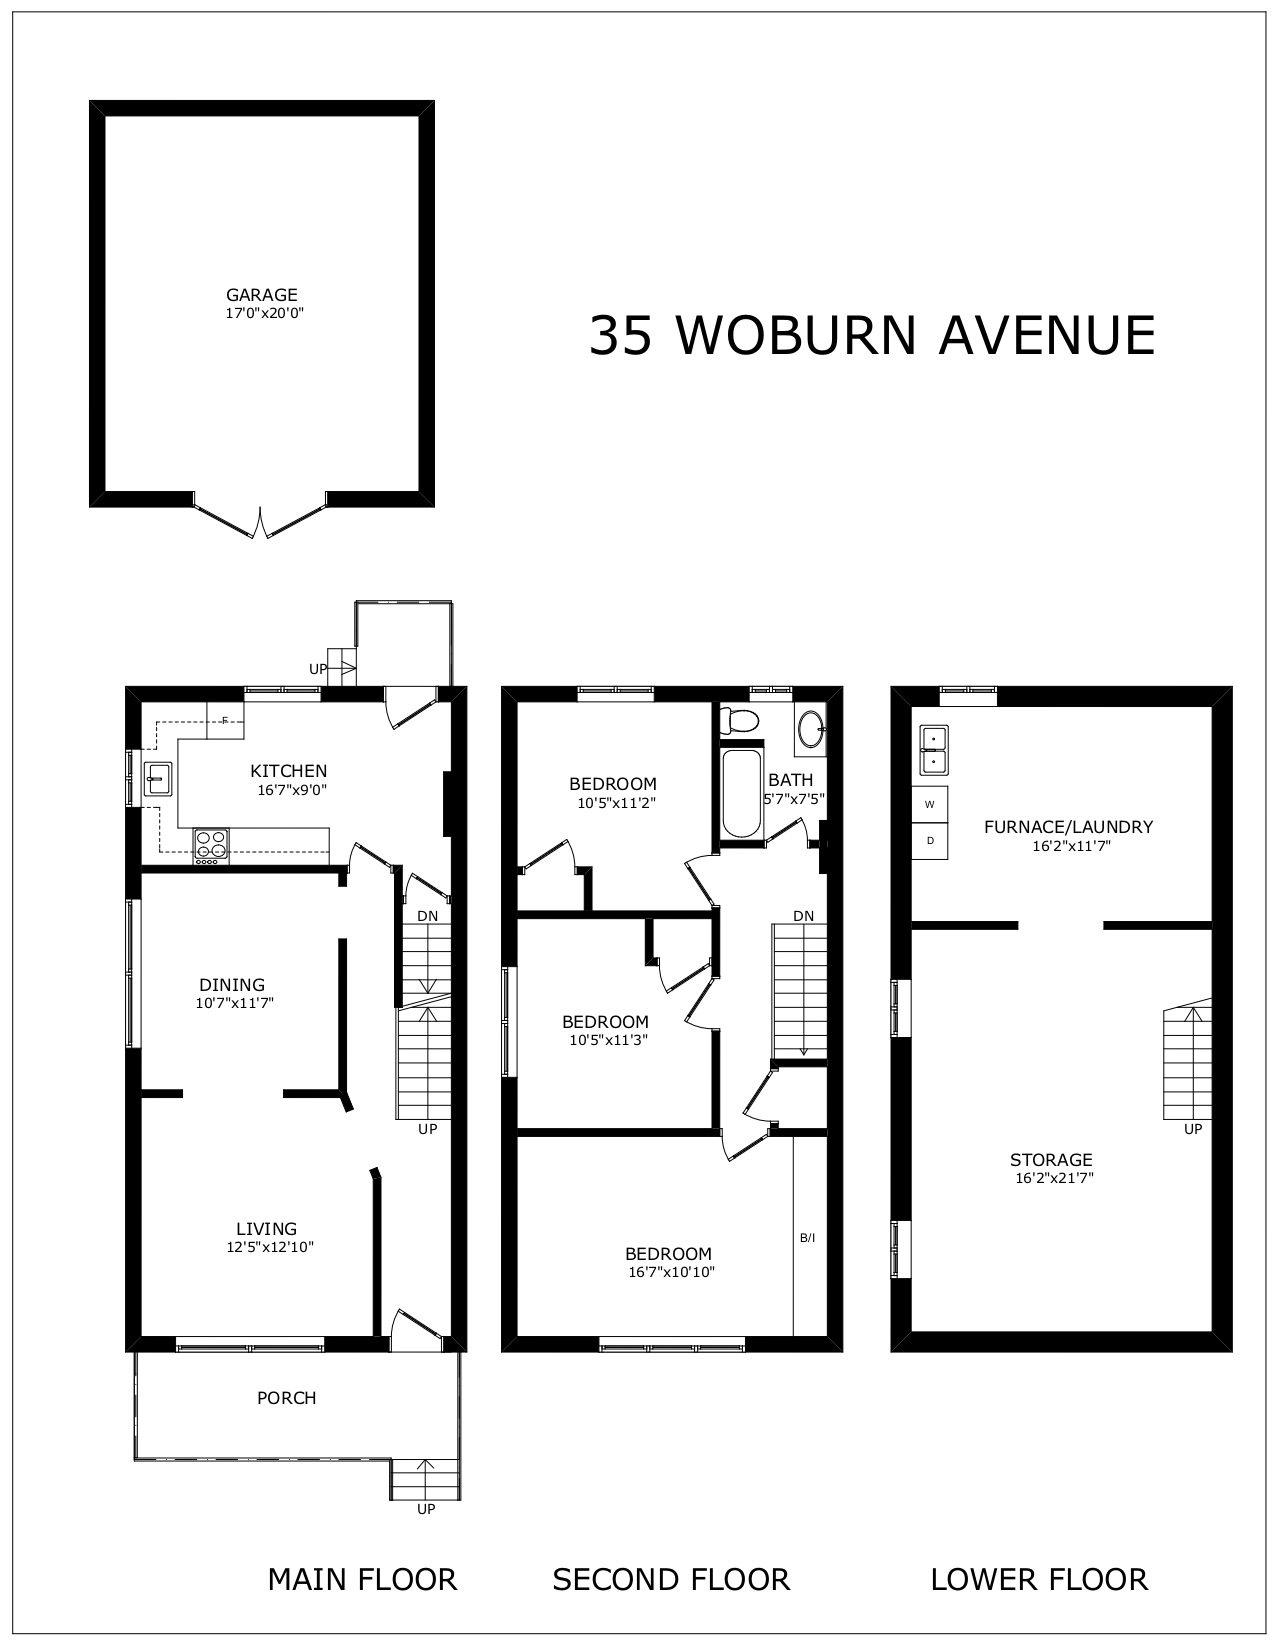 Floor plans for 35 Woburn Ave